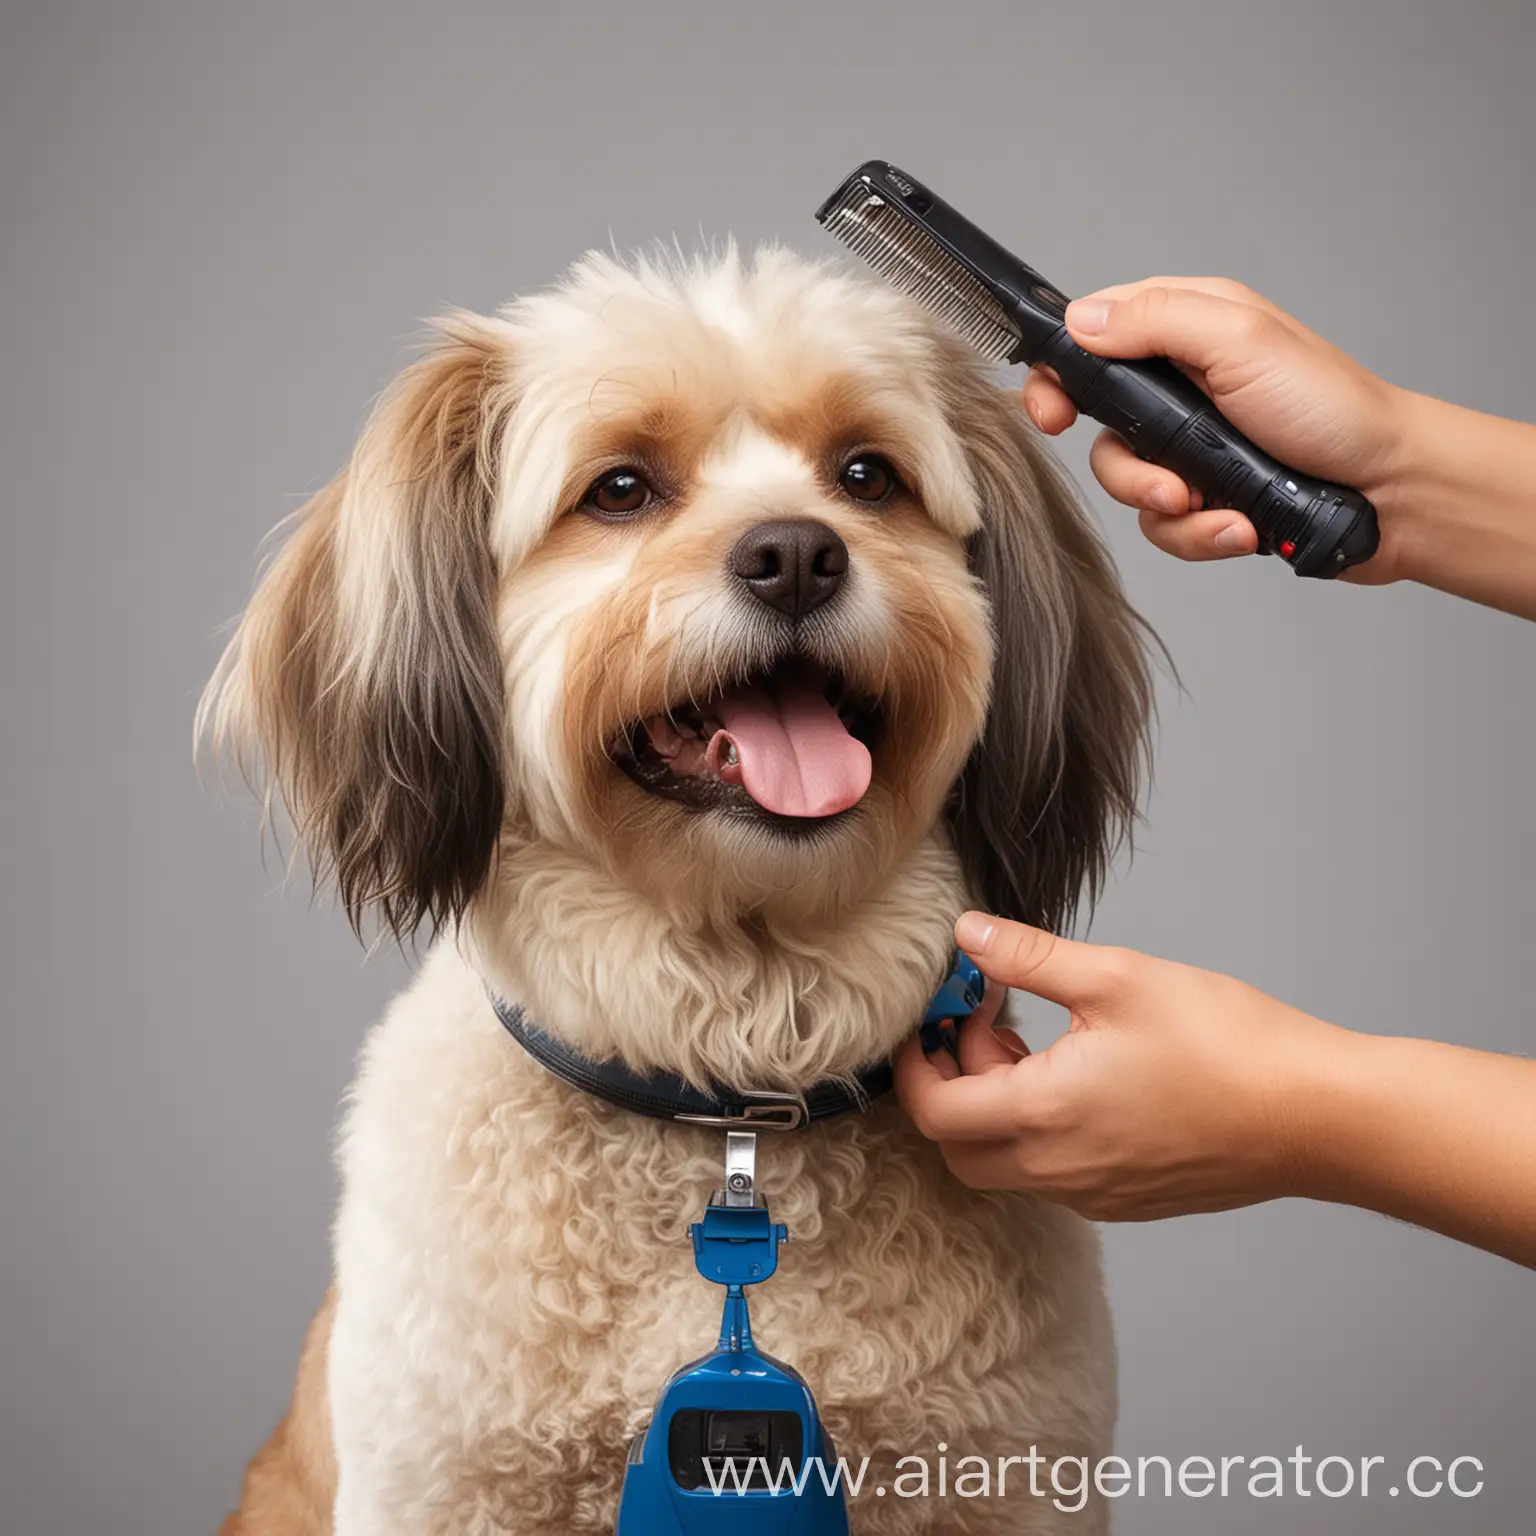 довольная собака во время стрижки машинкой для волос